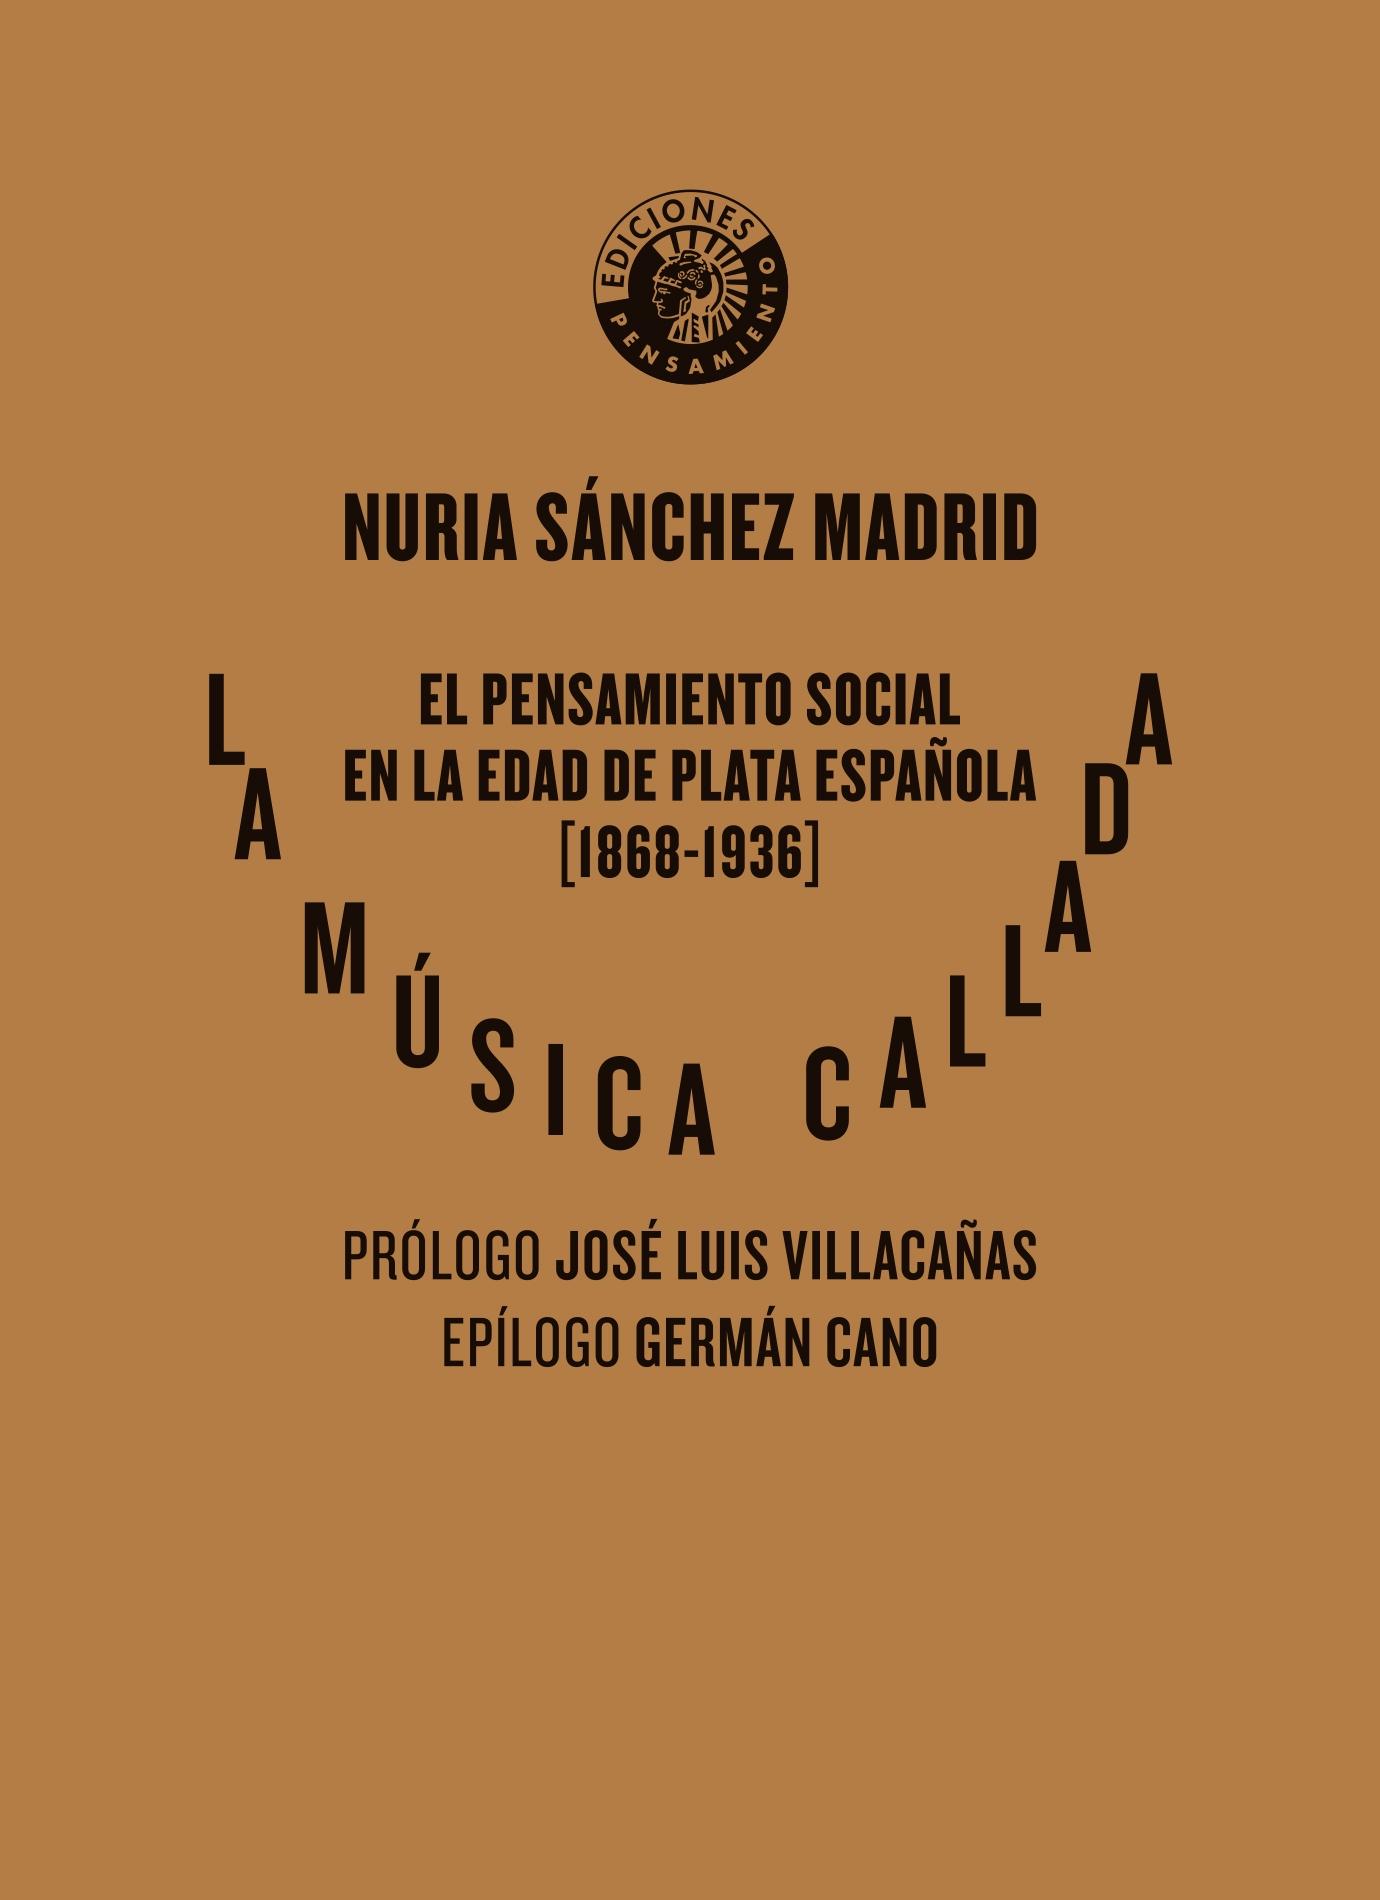 Música callada, La "El pensamiento social en la Edad de Plata española (1868-1936)"